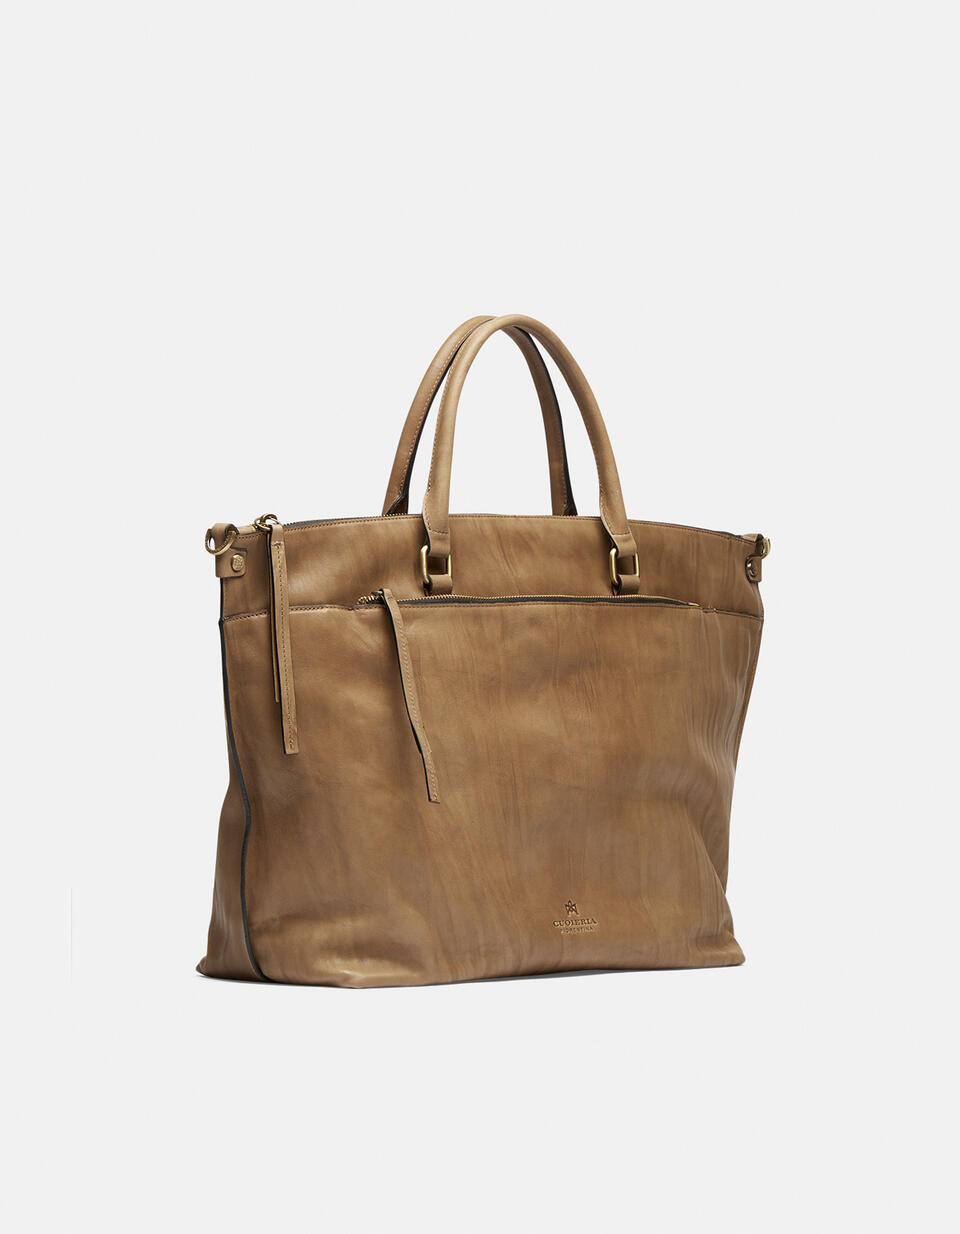 Safari Maxi tote bag in Delavé calfskin - TOTE BAG - WOMEN'S BAGS | bags Mimì TAUPE - TOTE BAG - WOMEN'S BAGS | bagsCuoieria Fiorentina